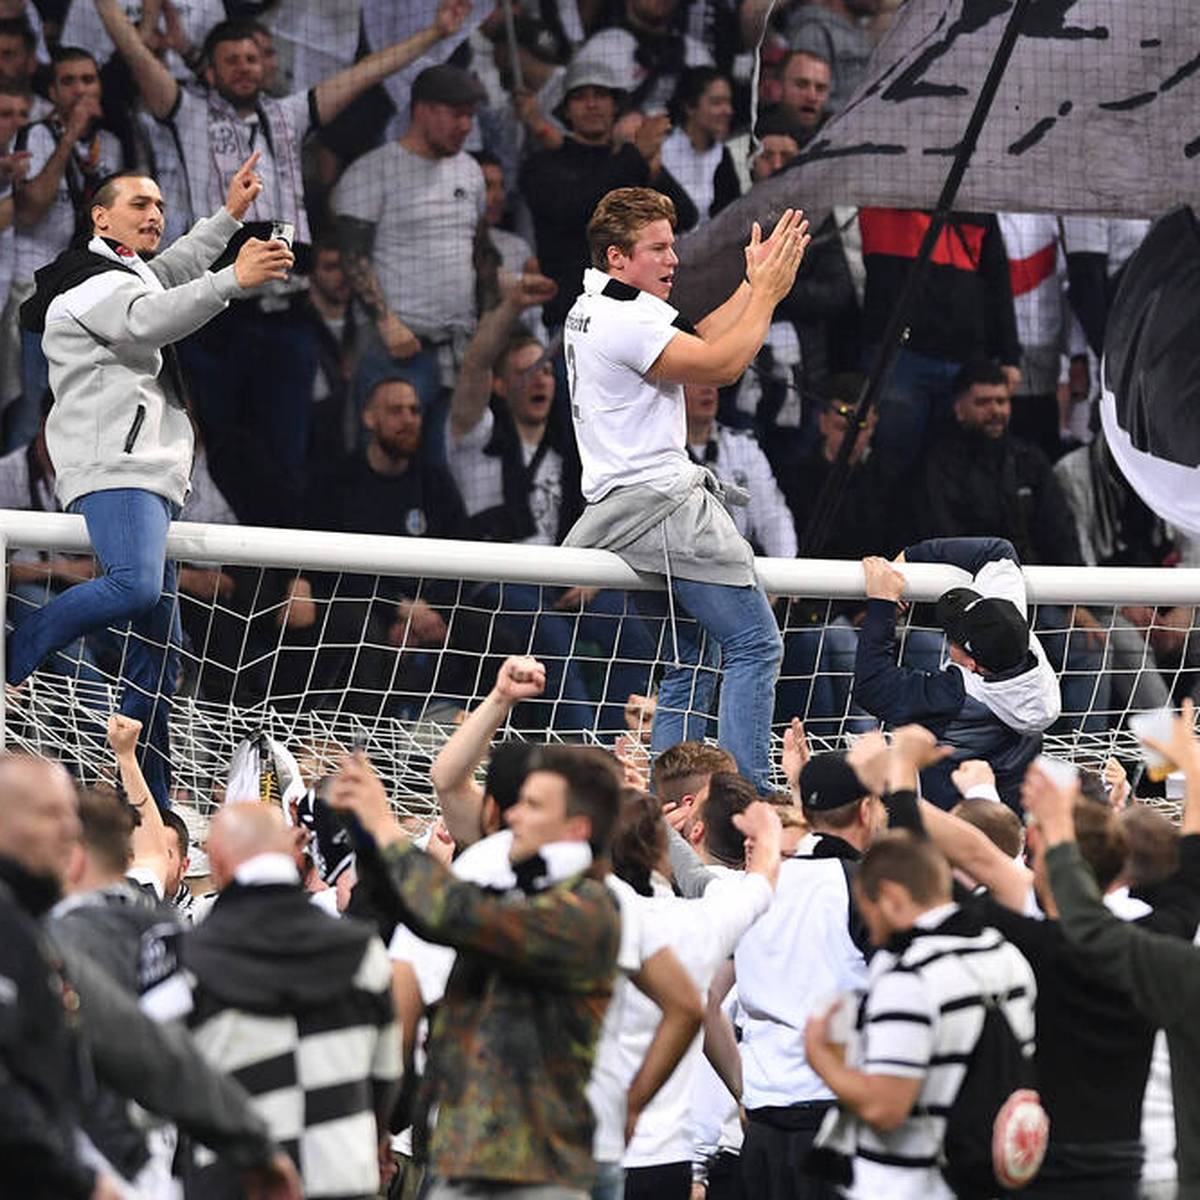 Platzsturm nach dem Einzug ins Finale, Bengalos im Block oder auch das Entfernen der UEFA-Banner vor dem Endspiel: Die Frankfurter Fans haben auf sich aufmerksam gemacht. Dafür drohen der Eintracht Strafen. 